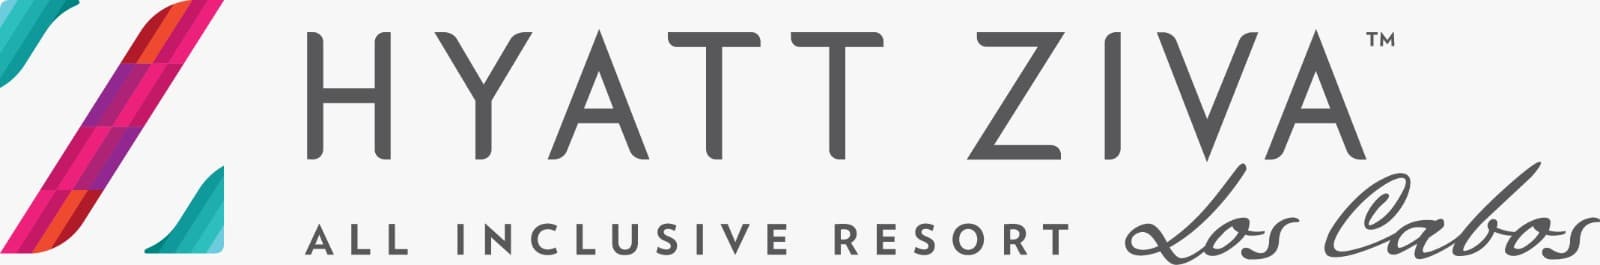 Logotipo de Hyatt Ziva Los Cabos. Líneas coloridas forman una 'Z' estilizada a la izquierda y el texto dice "HYATT ZIVA All Inclusive Resort Los Cabos" en gris.